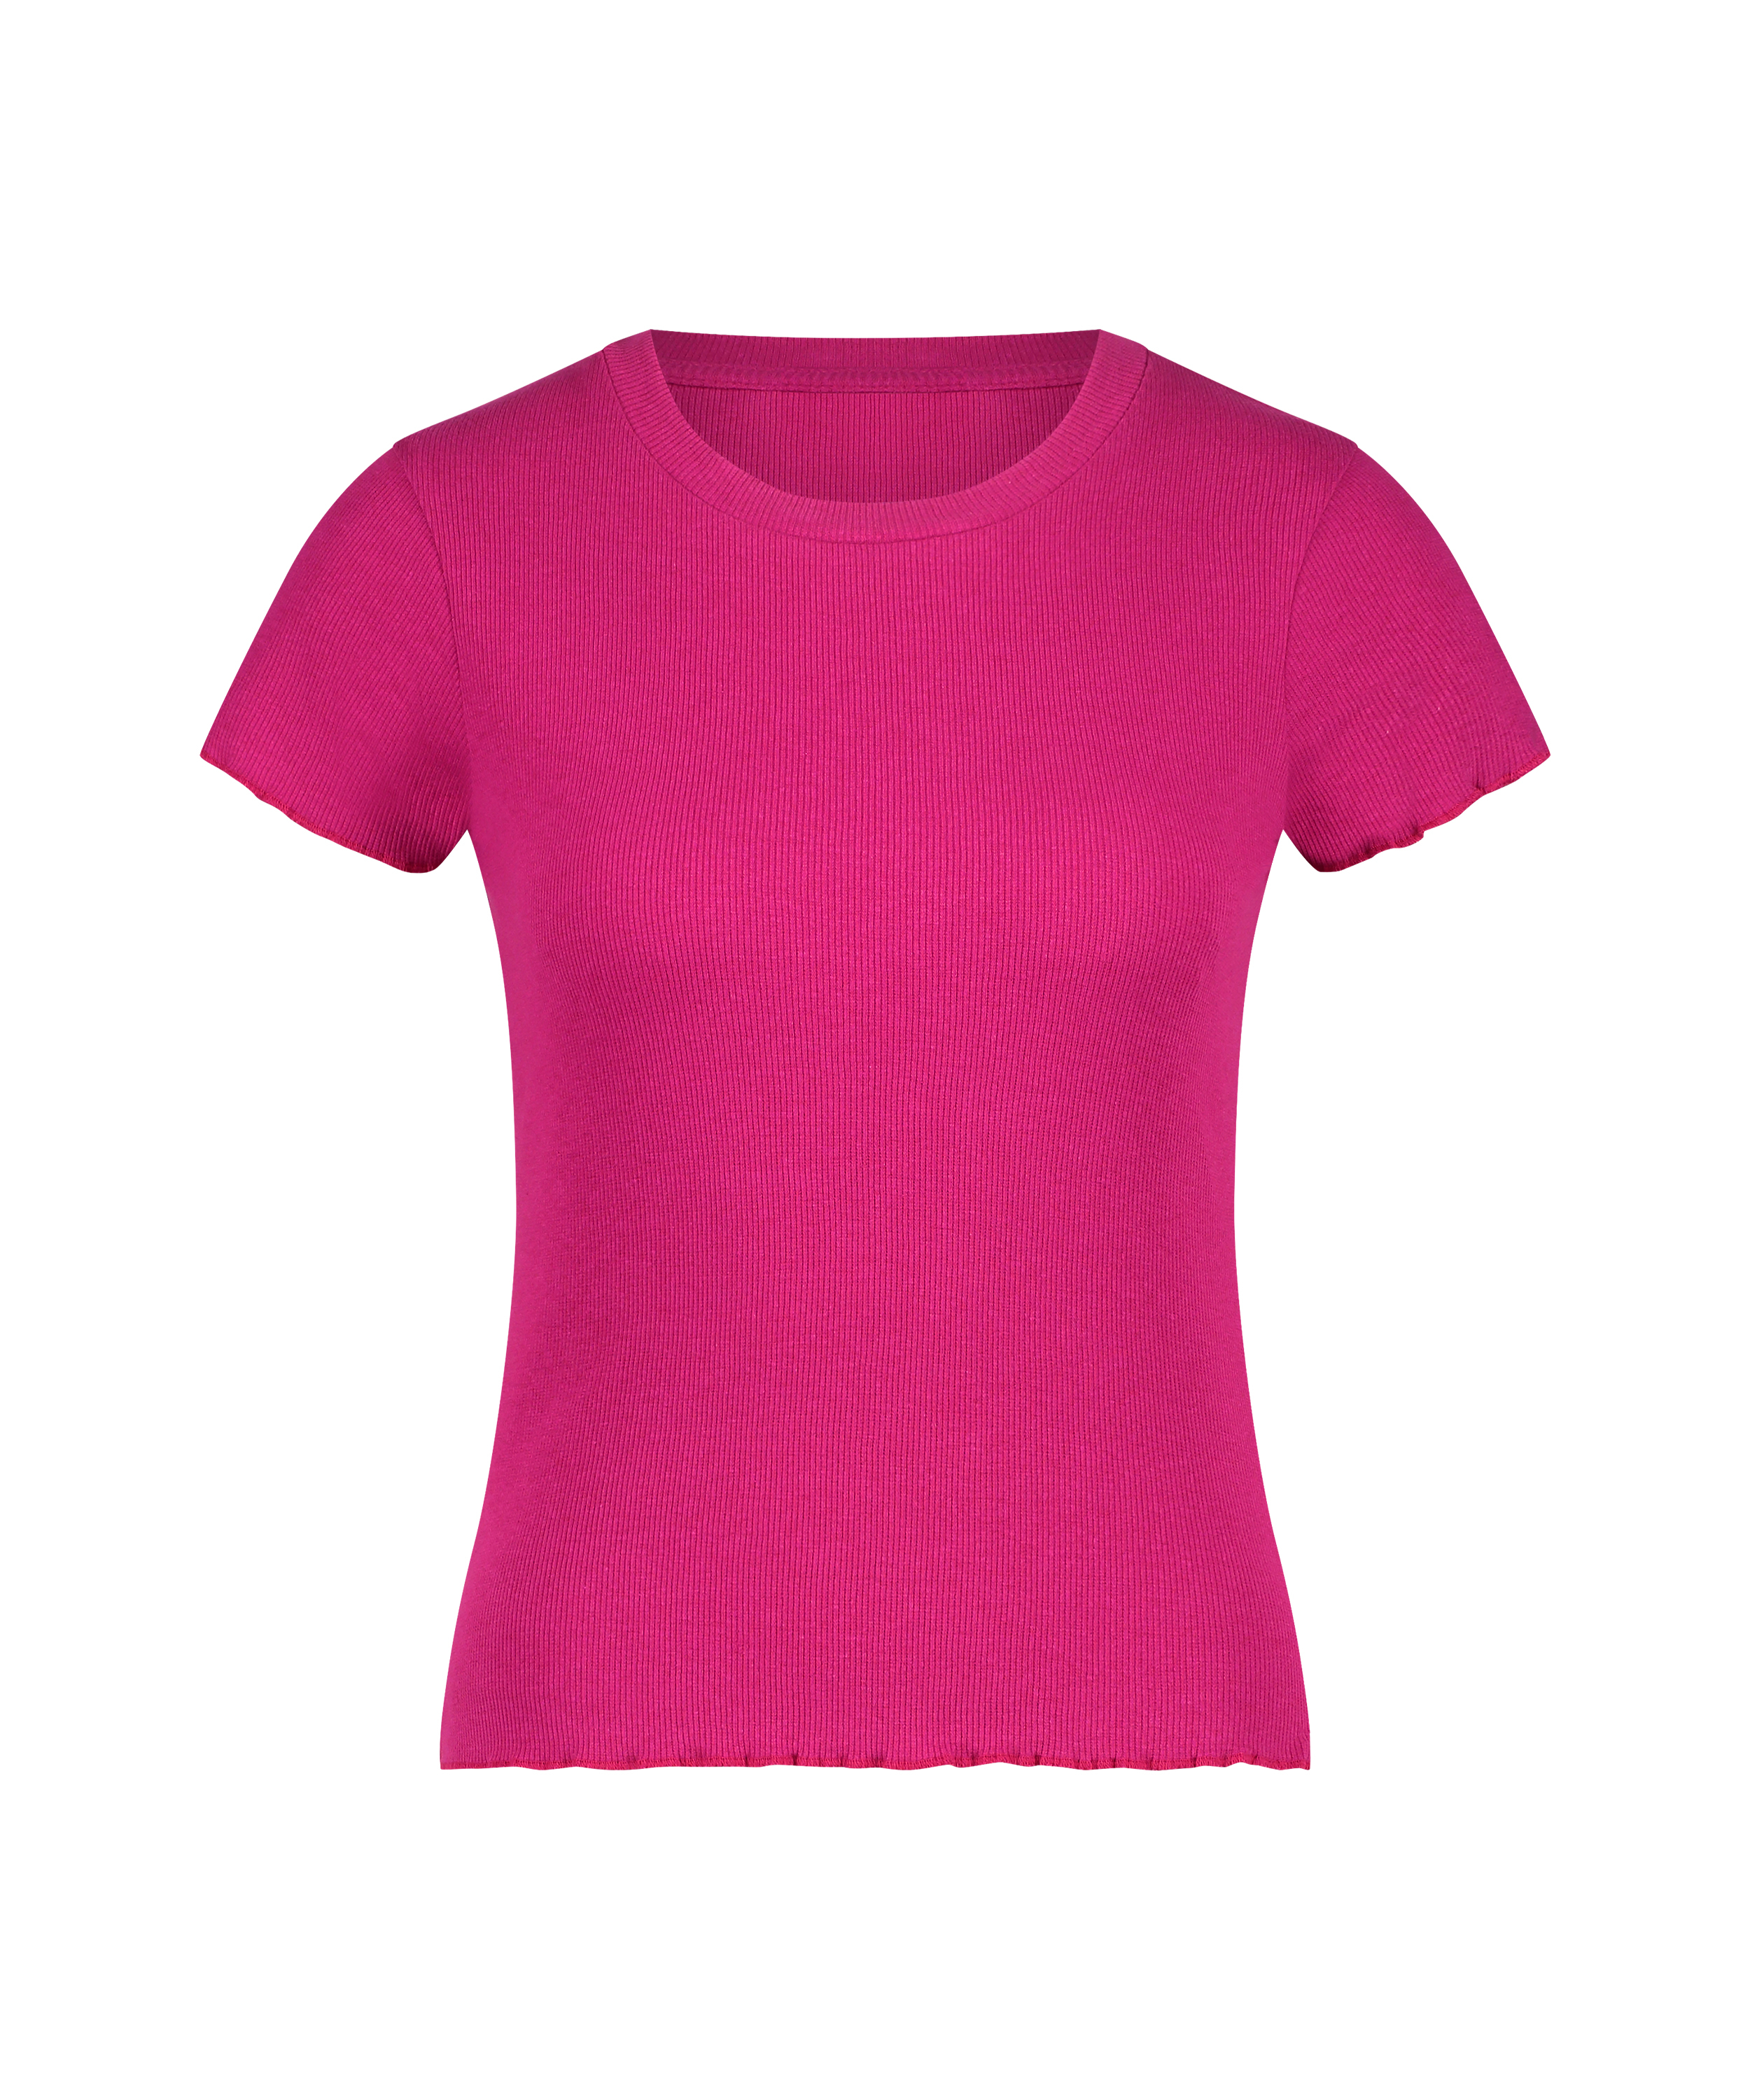 Rib shirt with short sleeves, Pink, main